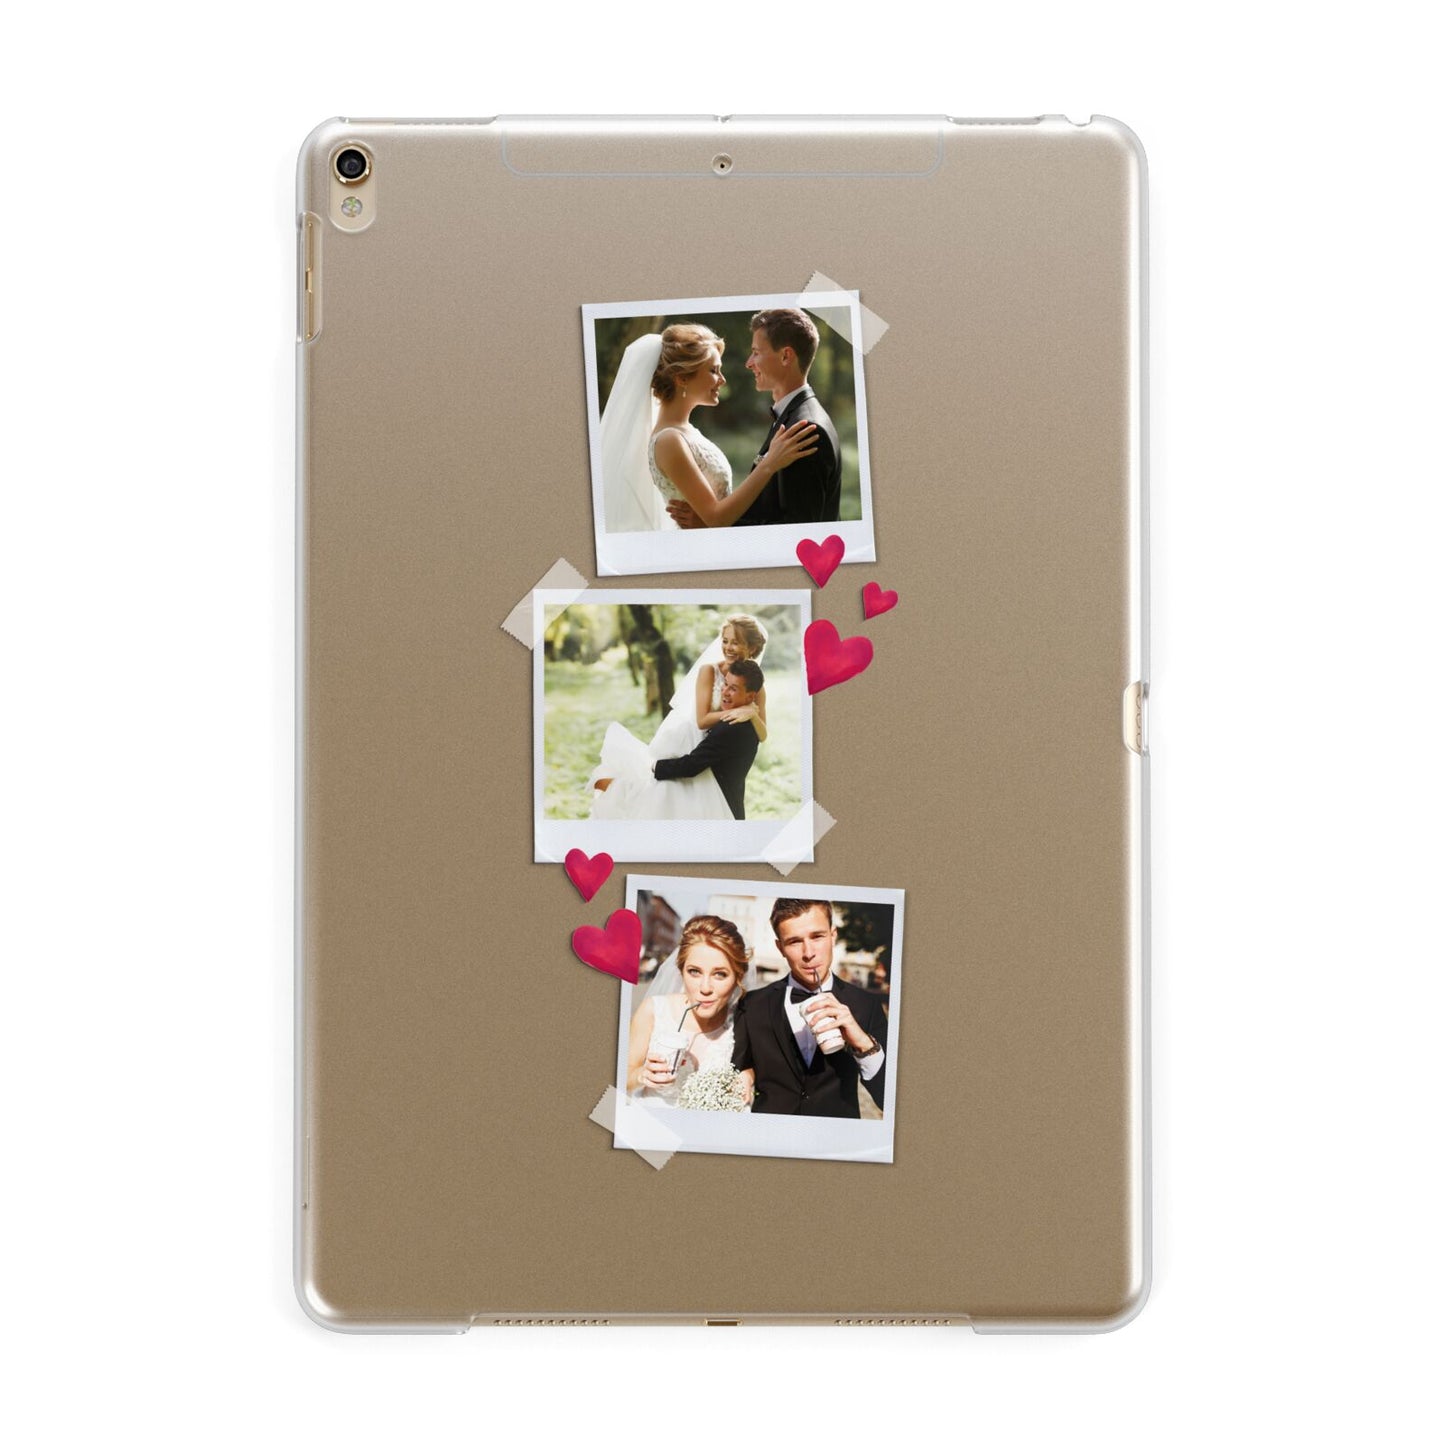 Personalised Wedding Photo Montage Apple iPad Gold Case